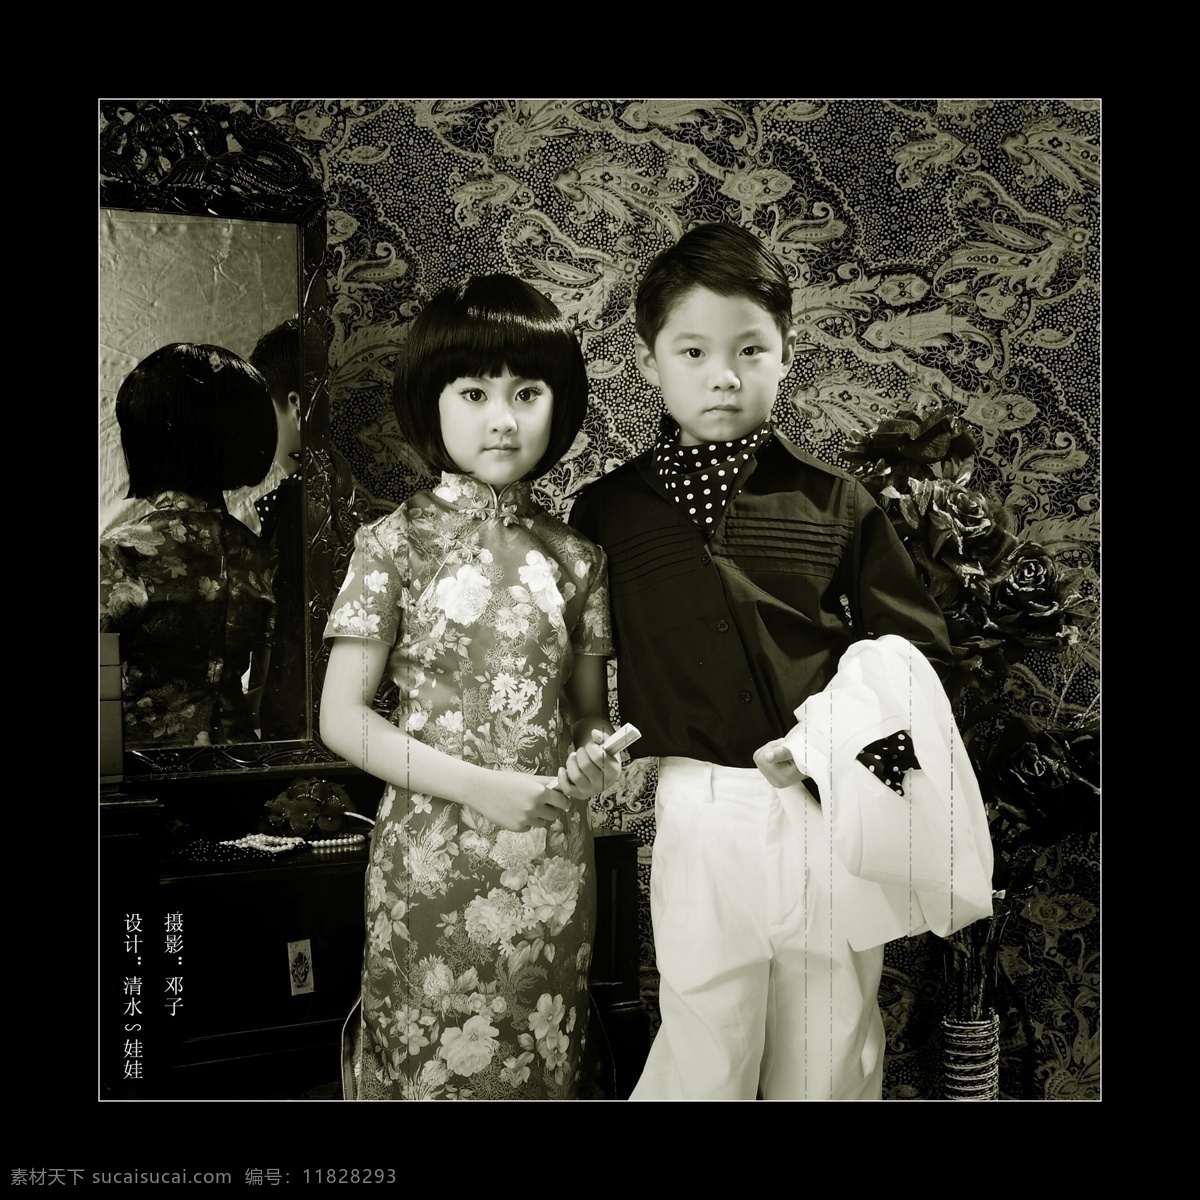 上海滩 儿童模板 儿童摄影模板 封底 宽幅 人物 摄影模板 源文件库 鬼马精灵 中国风 2008 鬼 马 精灵 psd源文件